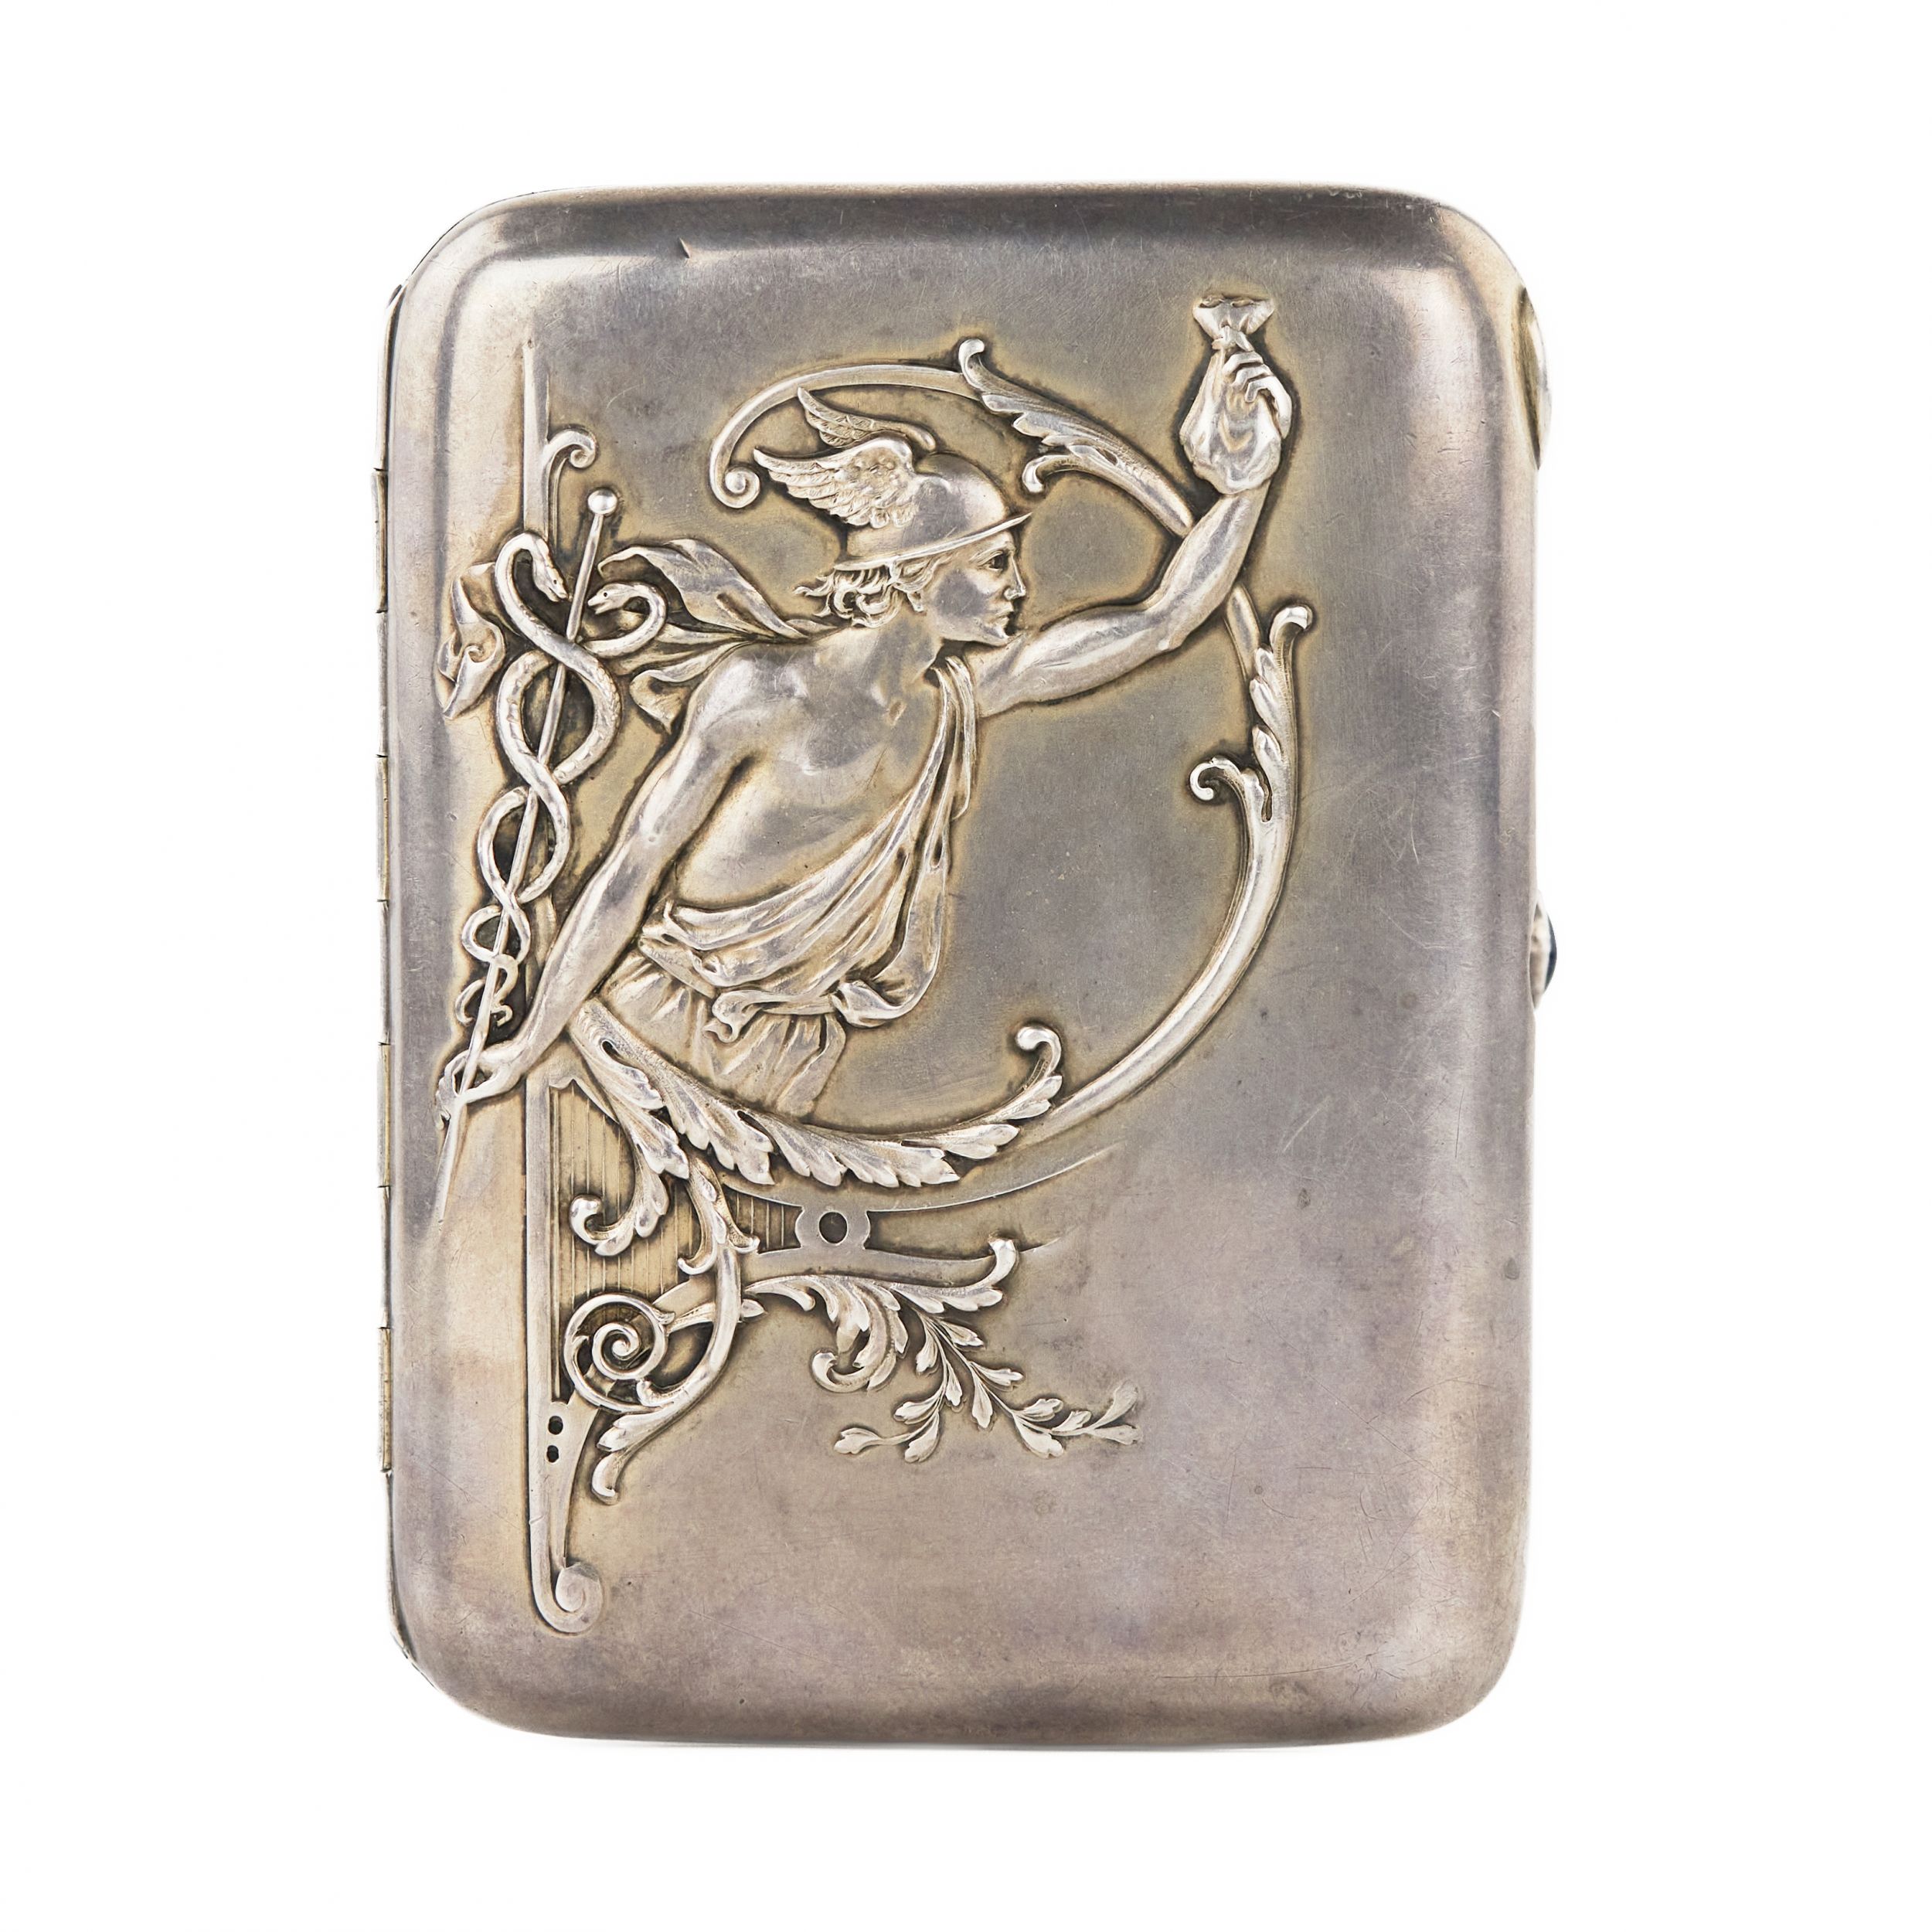 Silver-cigarette-case-Mercury-Russian-Empire-Moscow-1908-1913-